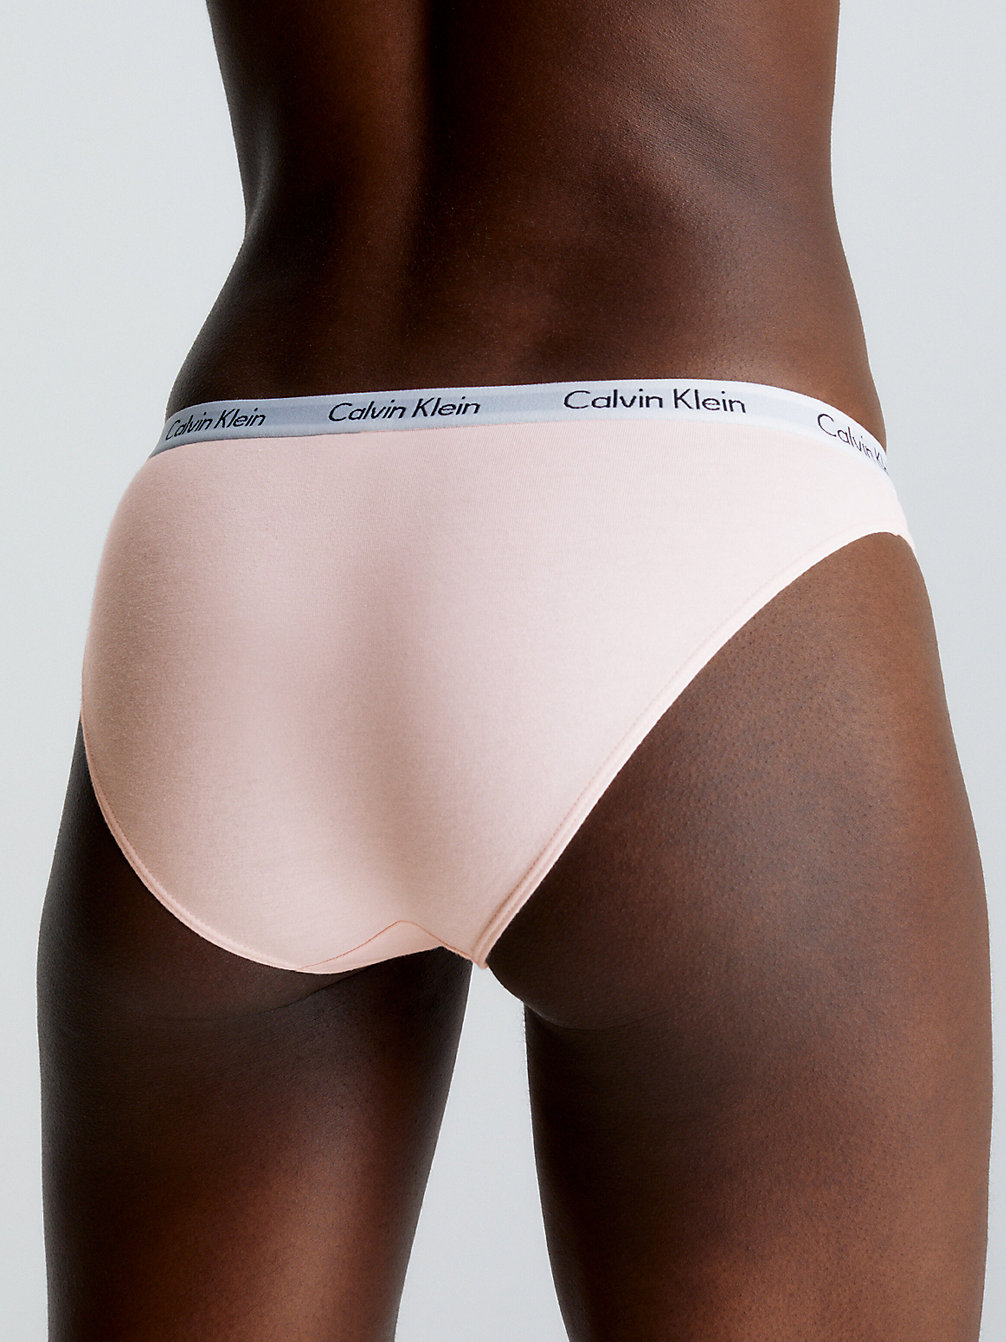 NYMPHS THIGH Bikini Brief - Carousel undefined women Calvin Klein